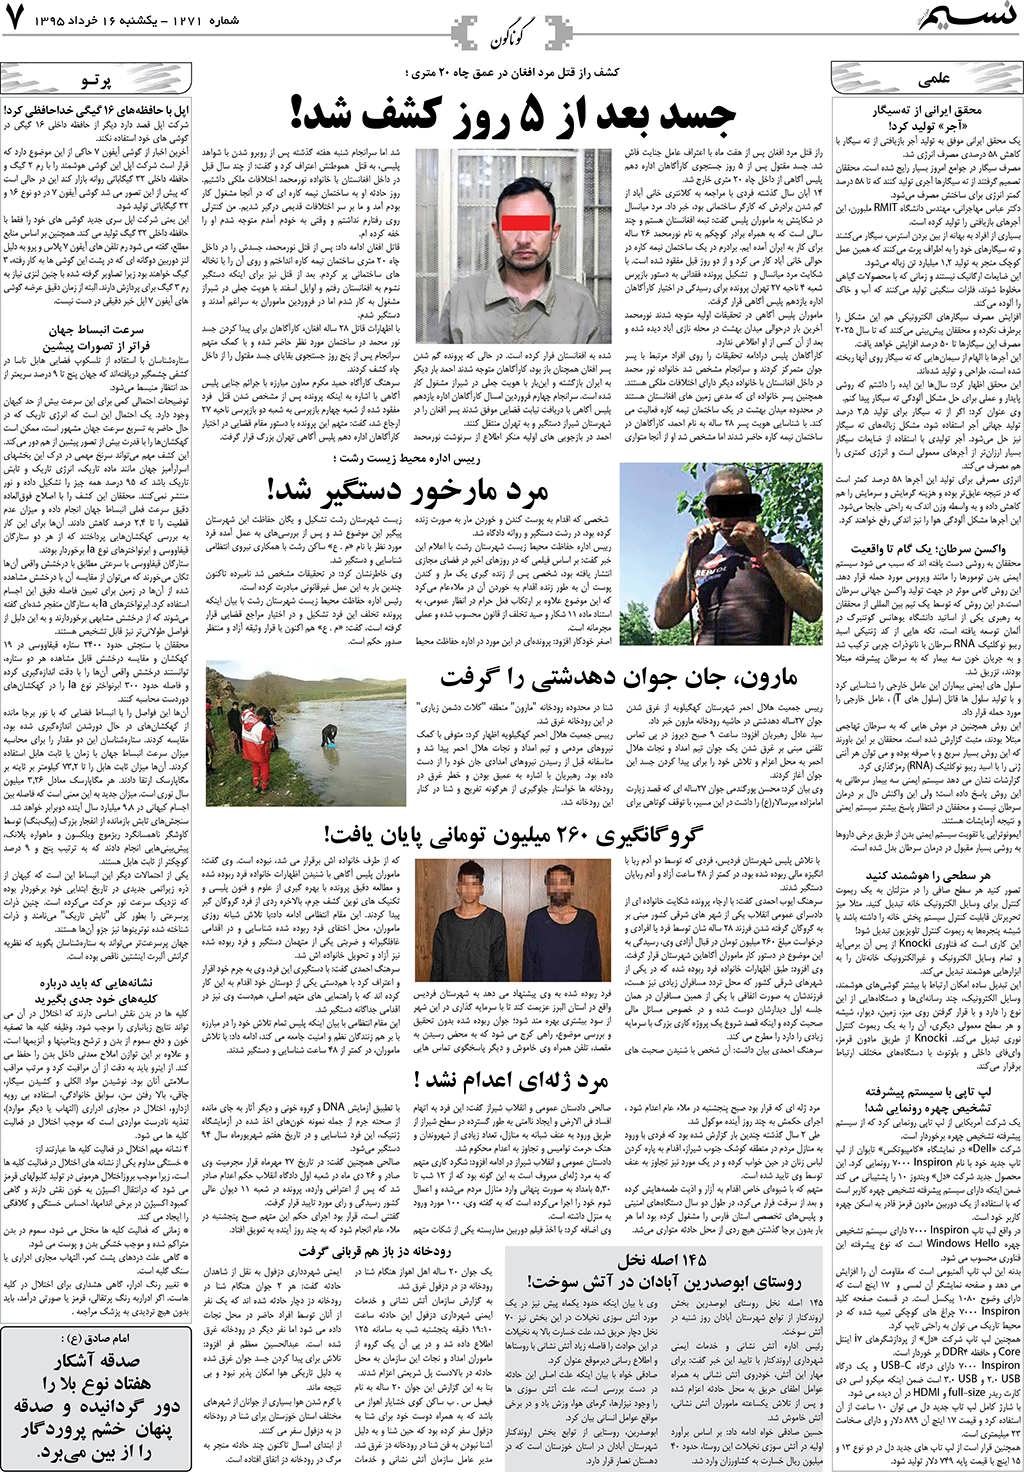 صفحه گوناگون روزنامه نسیم شماره 1271